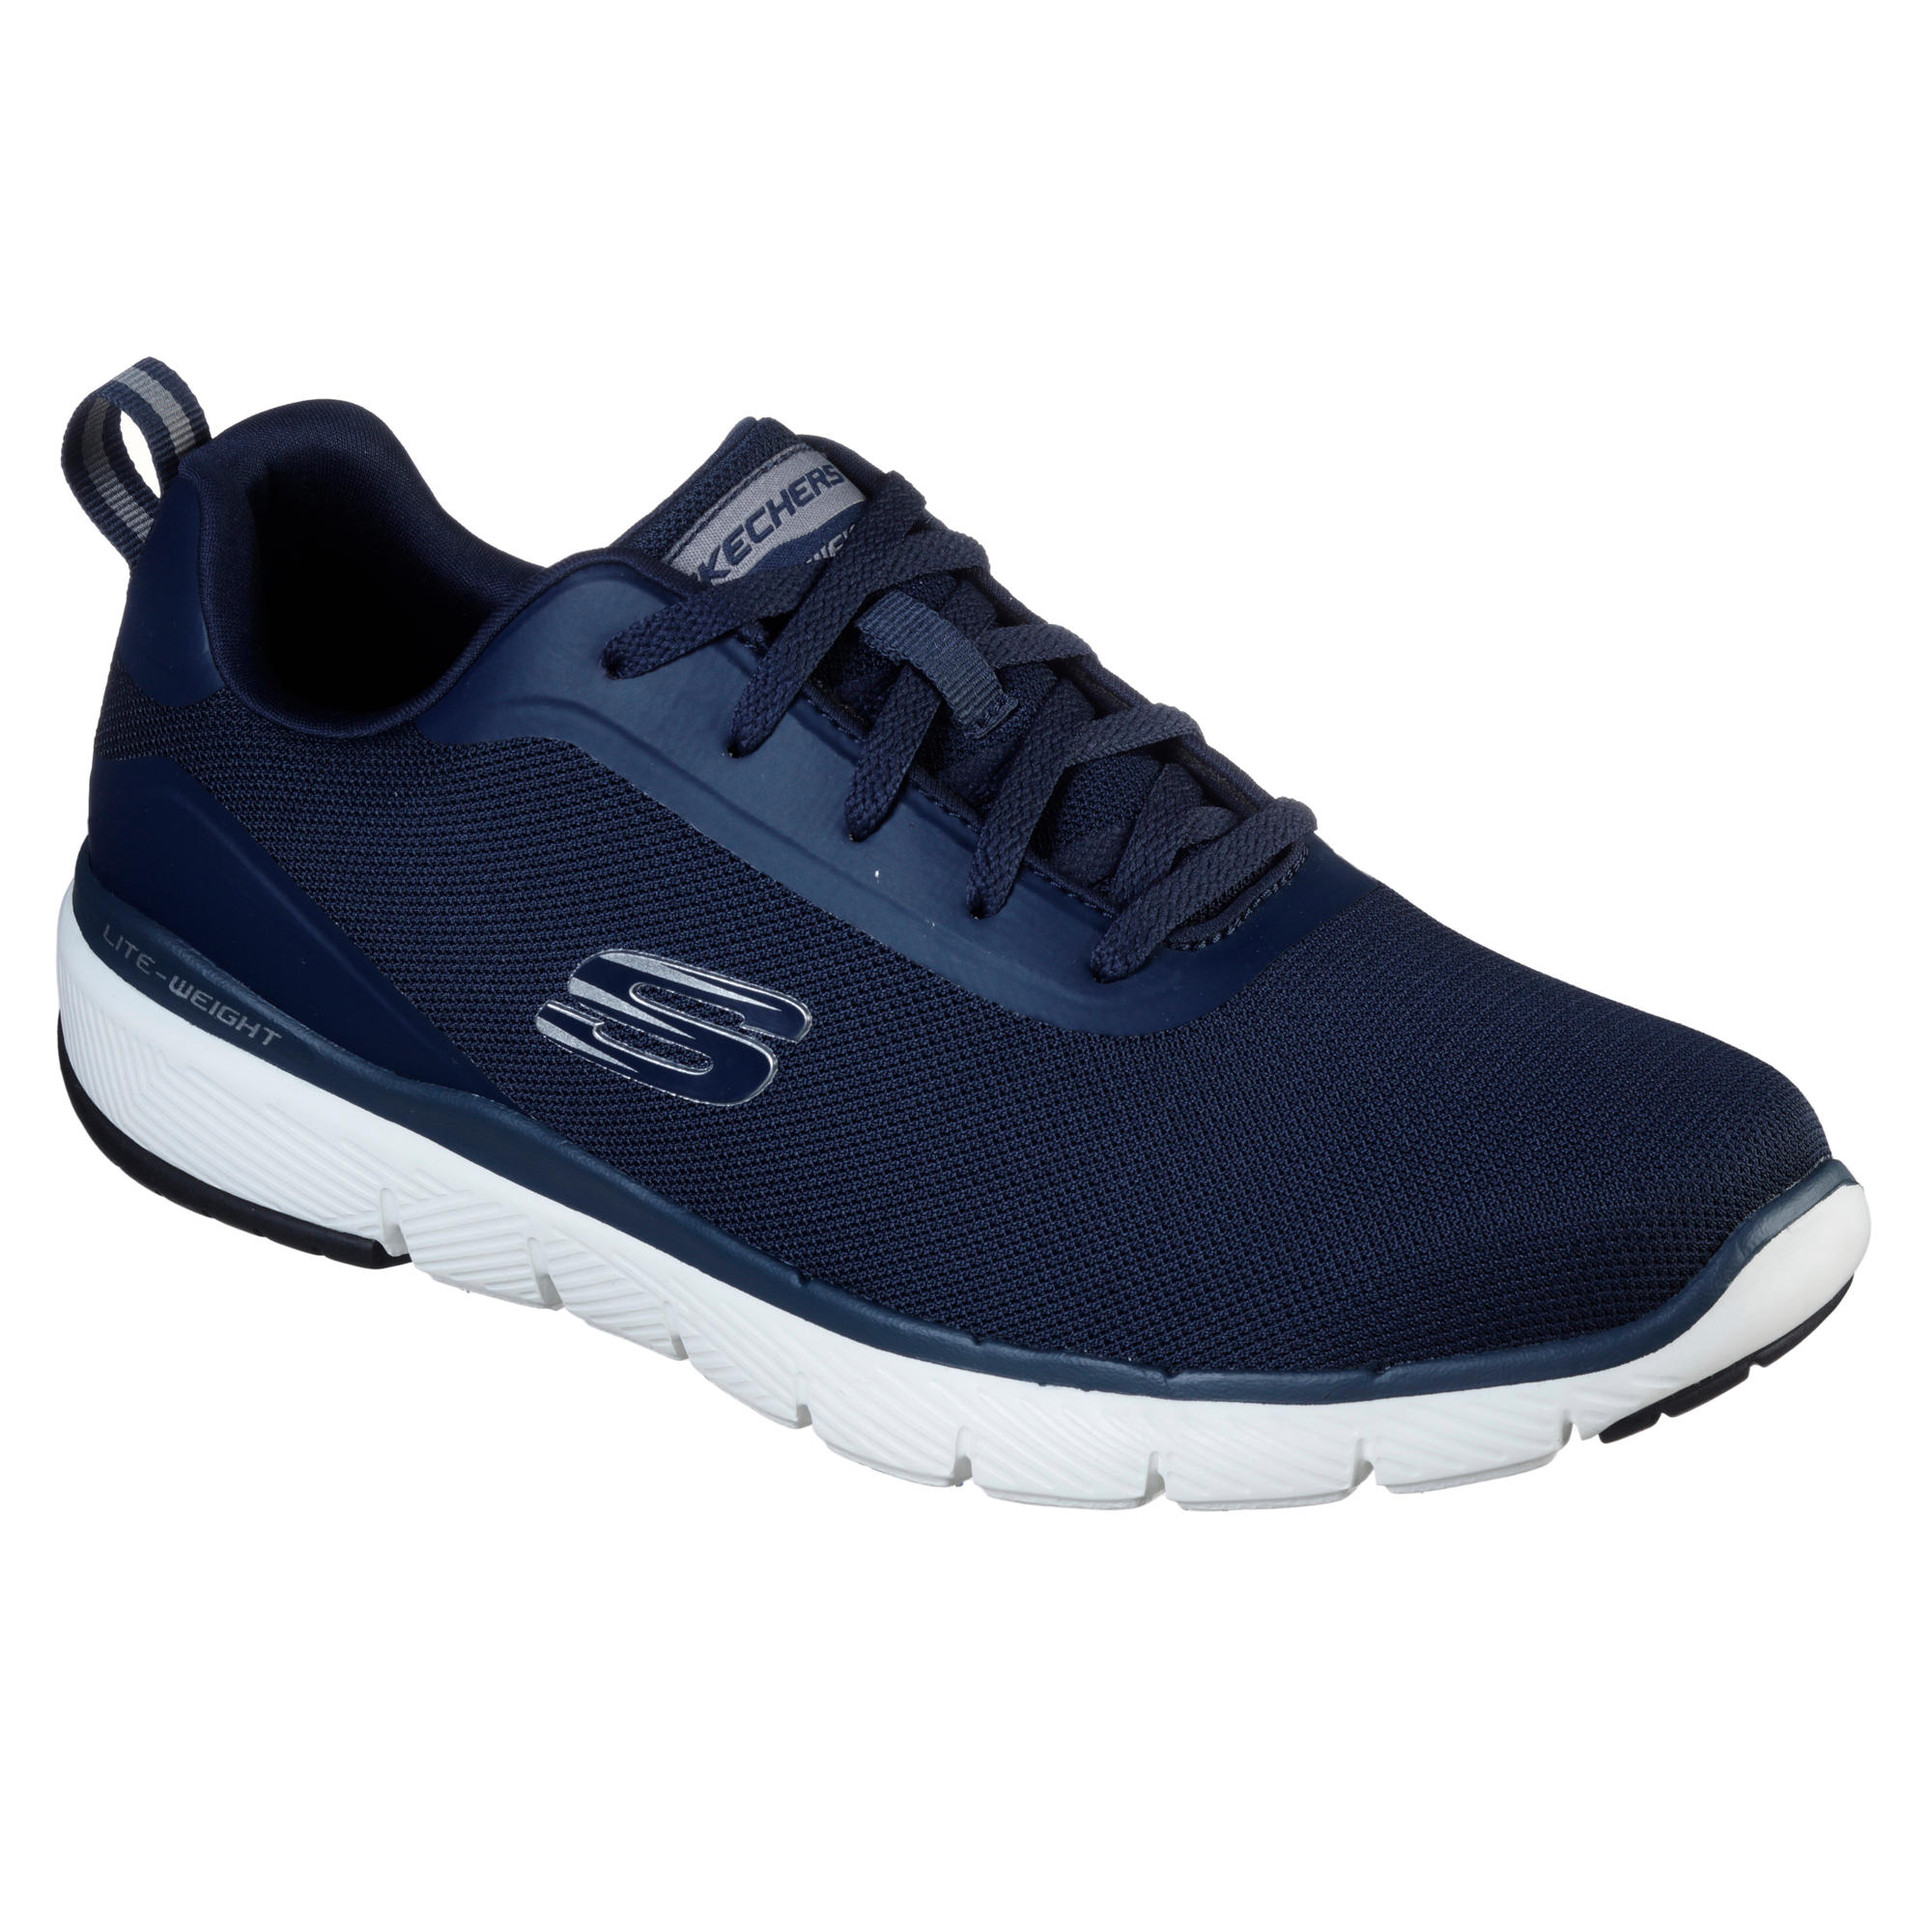 Men's Fitness Walking Shoes Skechers Flex Appeal - blue Skechers